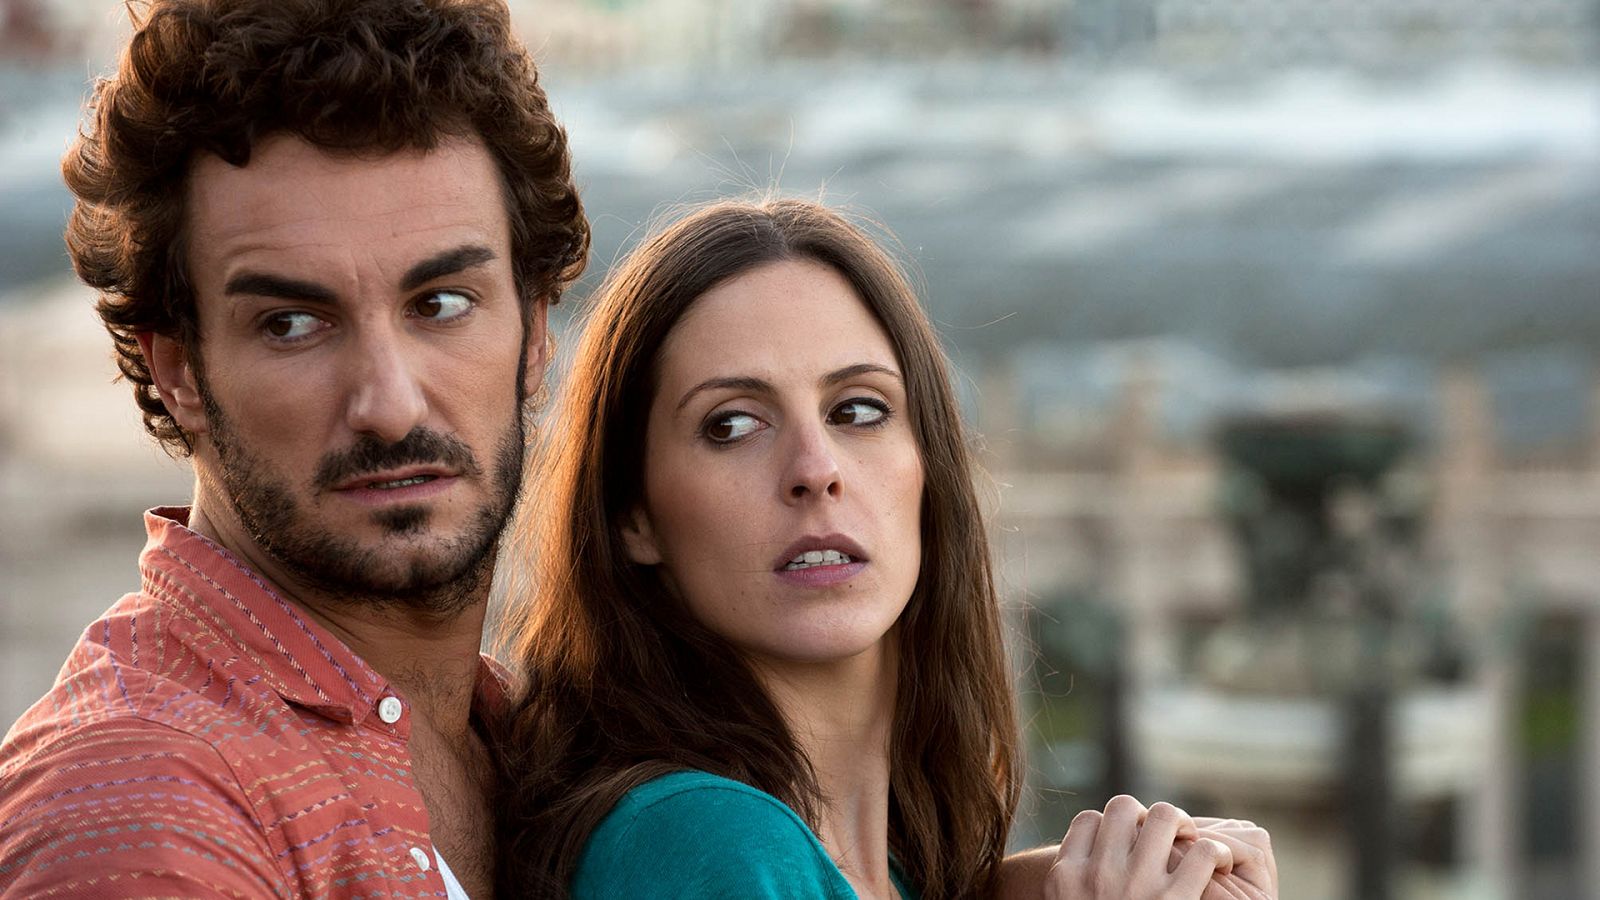 Barcelona, noche de verano: Cine español online, en Somos Cine | RTVE.es